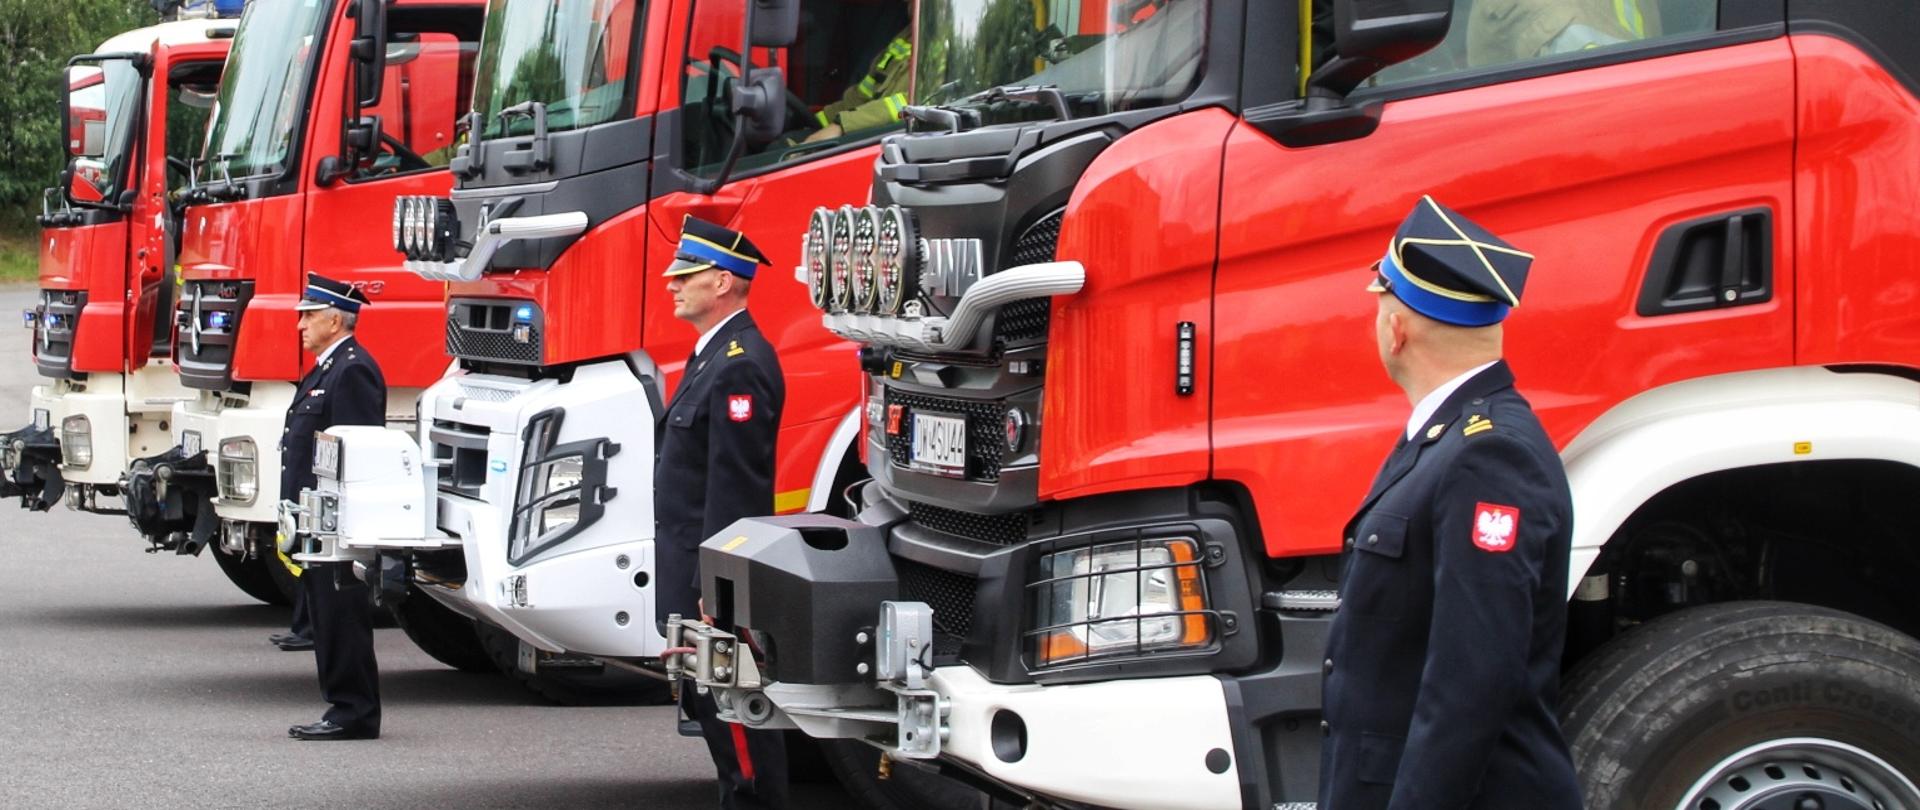 Parking przed Komendą Miejską PSP w Wałbrzychu. Na nim stoją cztery czerwone wozy strażackie, miedzy nimi stroją strażacy w żółtych mundurach bojowych